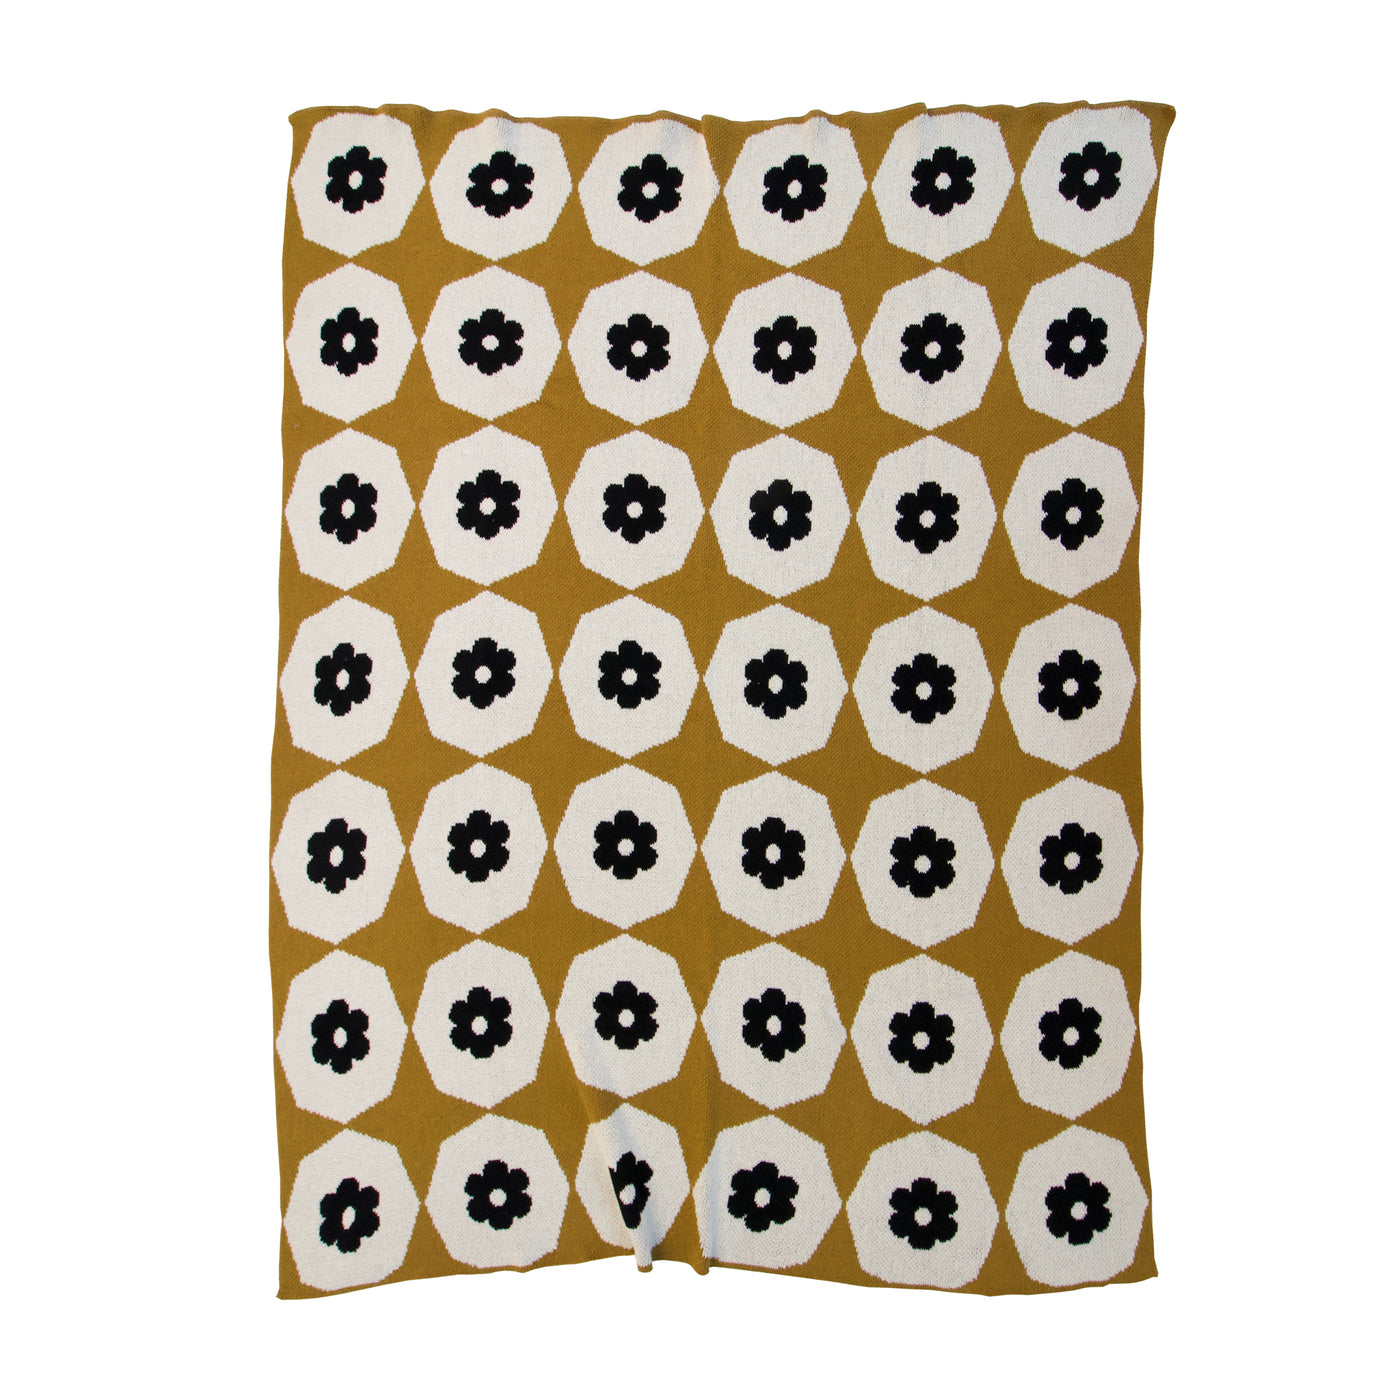 Gold and Black Flower Tile Pattern Cotton Blanket